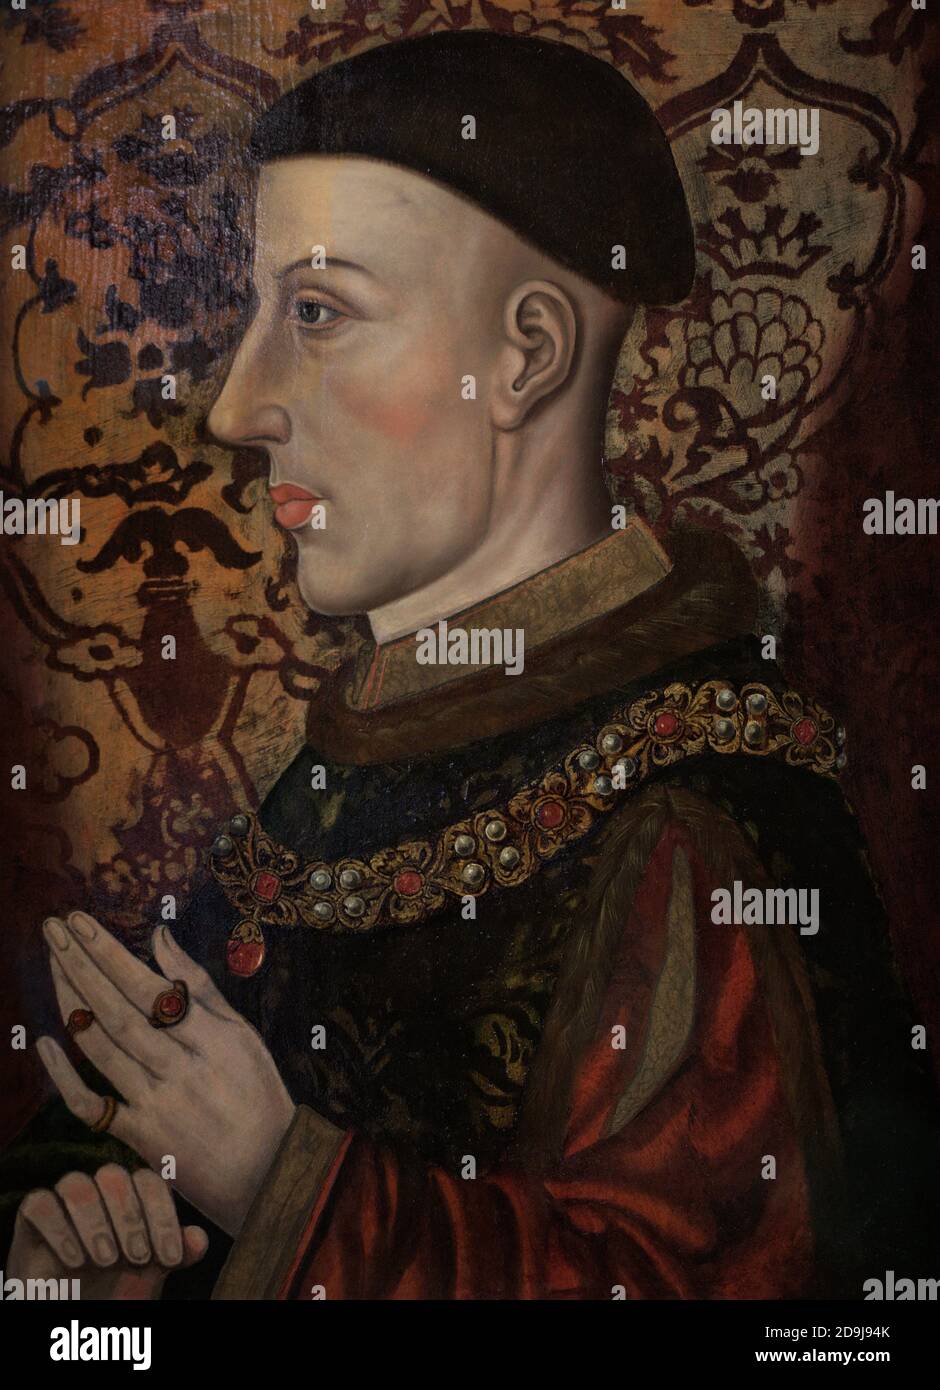 Henry V (c.1387-1422) roi d'Angleterre de 1413 à 1422. Portrait d'un artiste non identifié. Huile sur le panneau. Fin du XVIe siècle-début du XVIIe siècle. Galerie nationale de portraits. Londres, Angleterre, Royaume-Uni. Banque D'Images